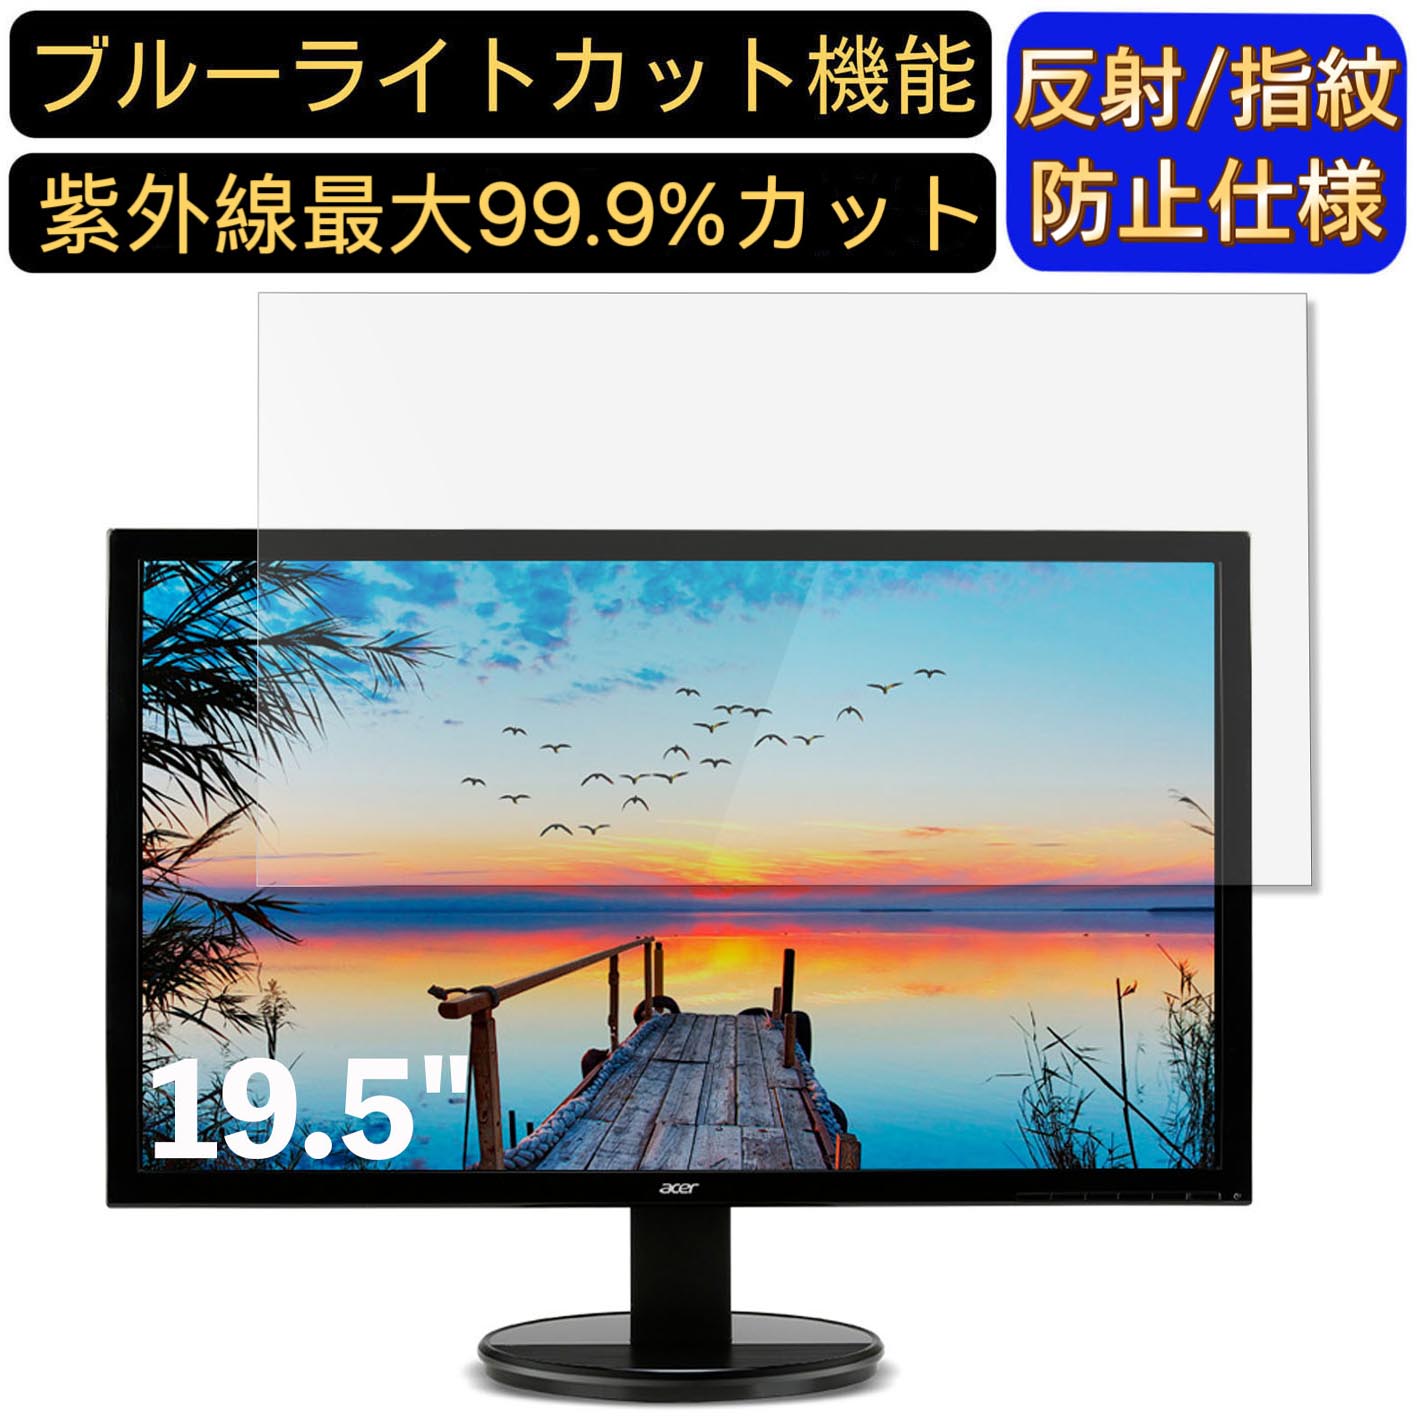 【ポイント2倍】Acer K202HQLbmix (K2) 19.5